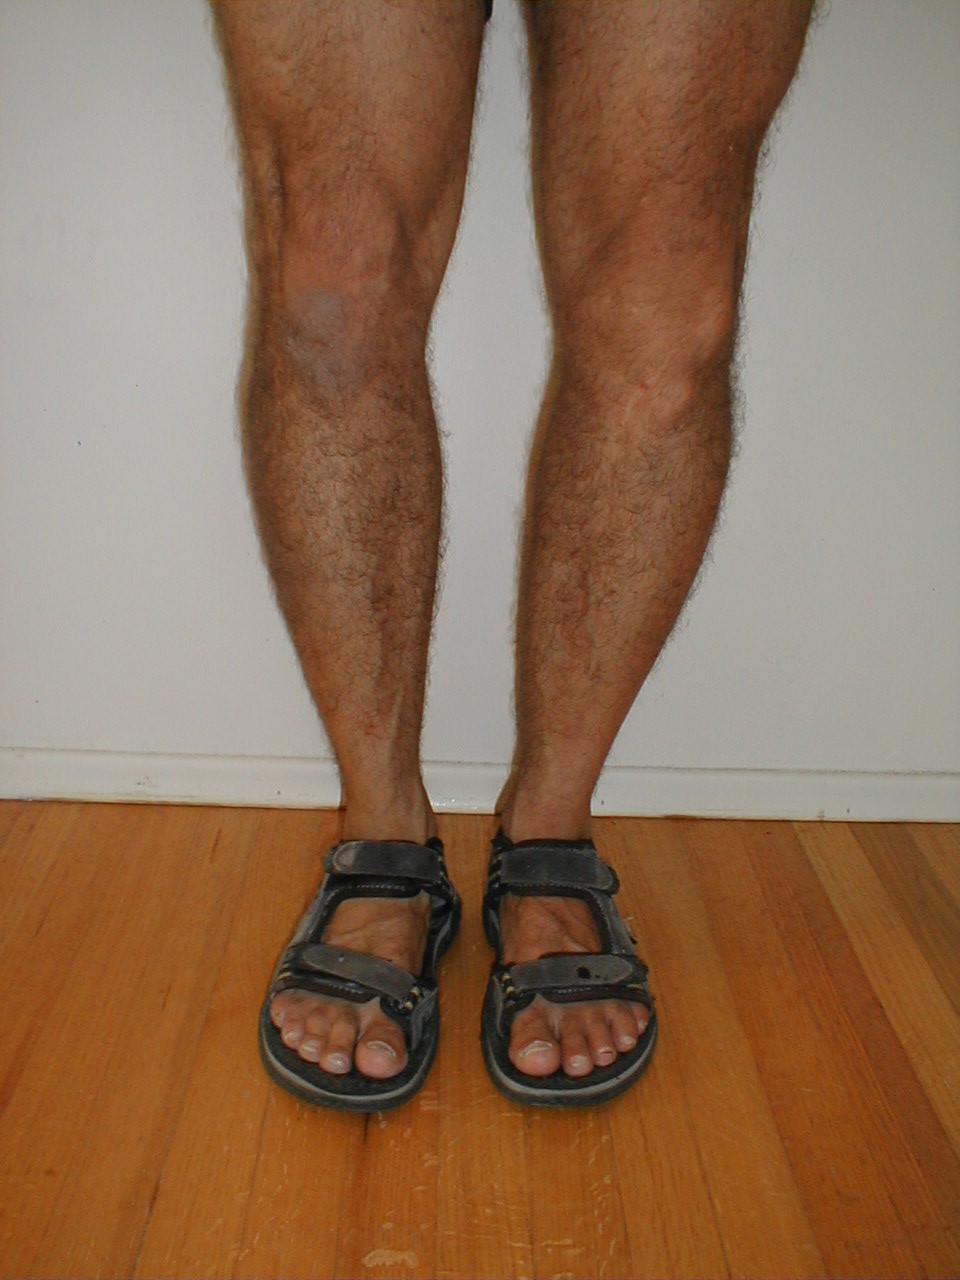 Varus Knee Deformity